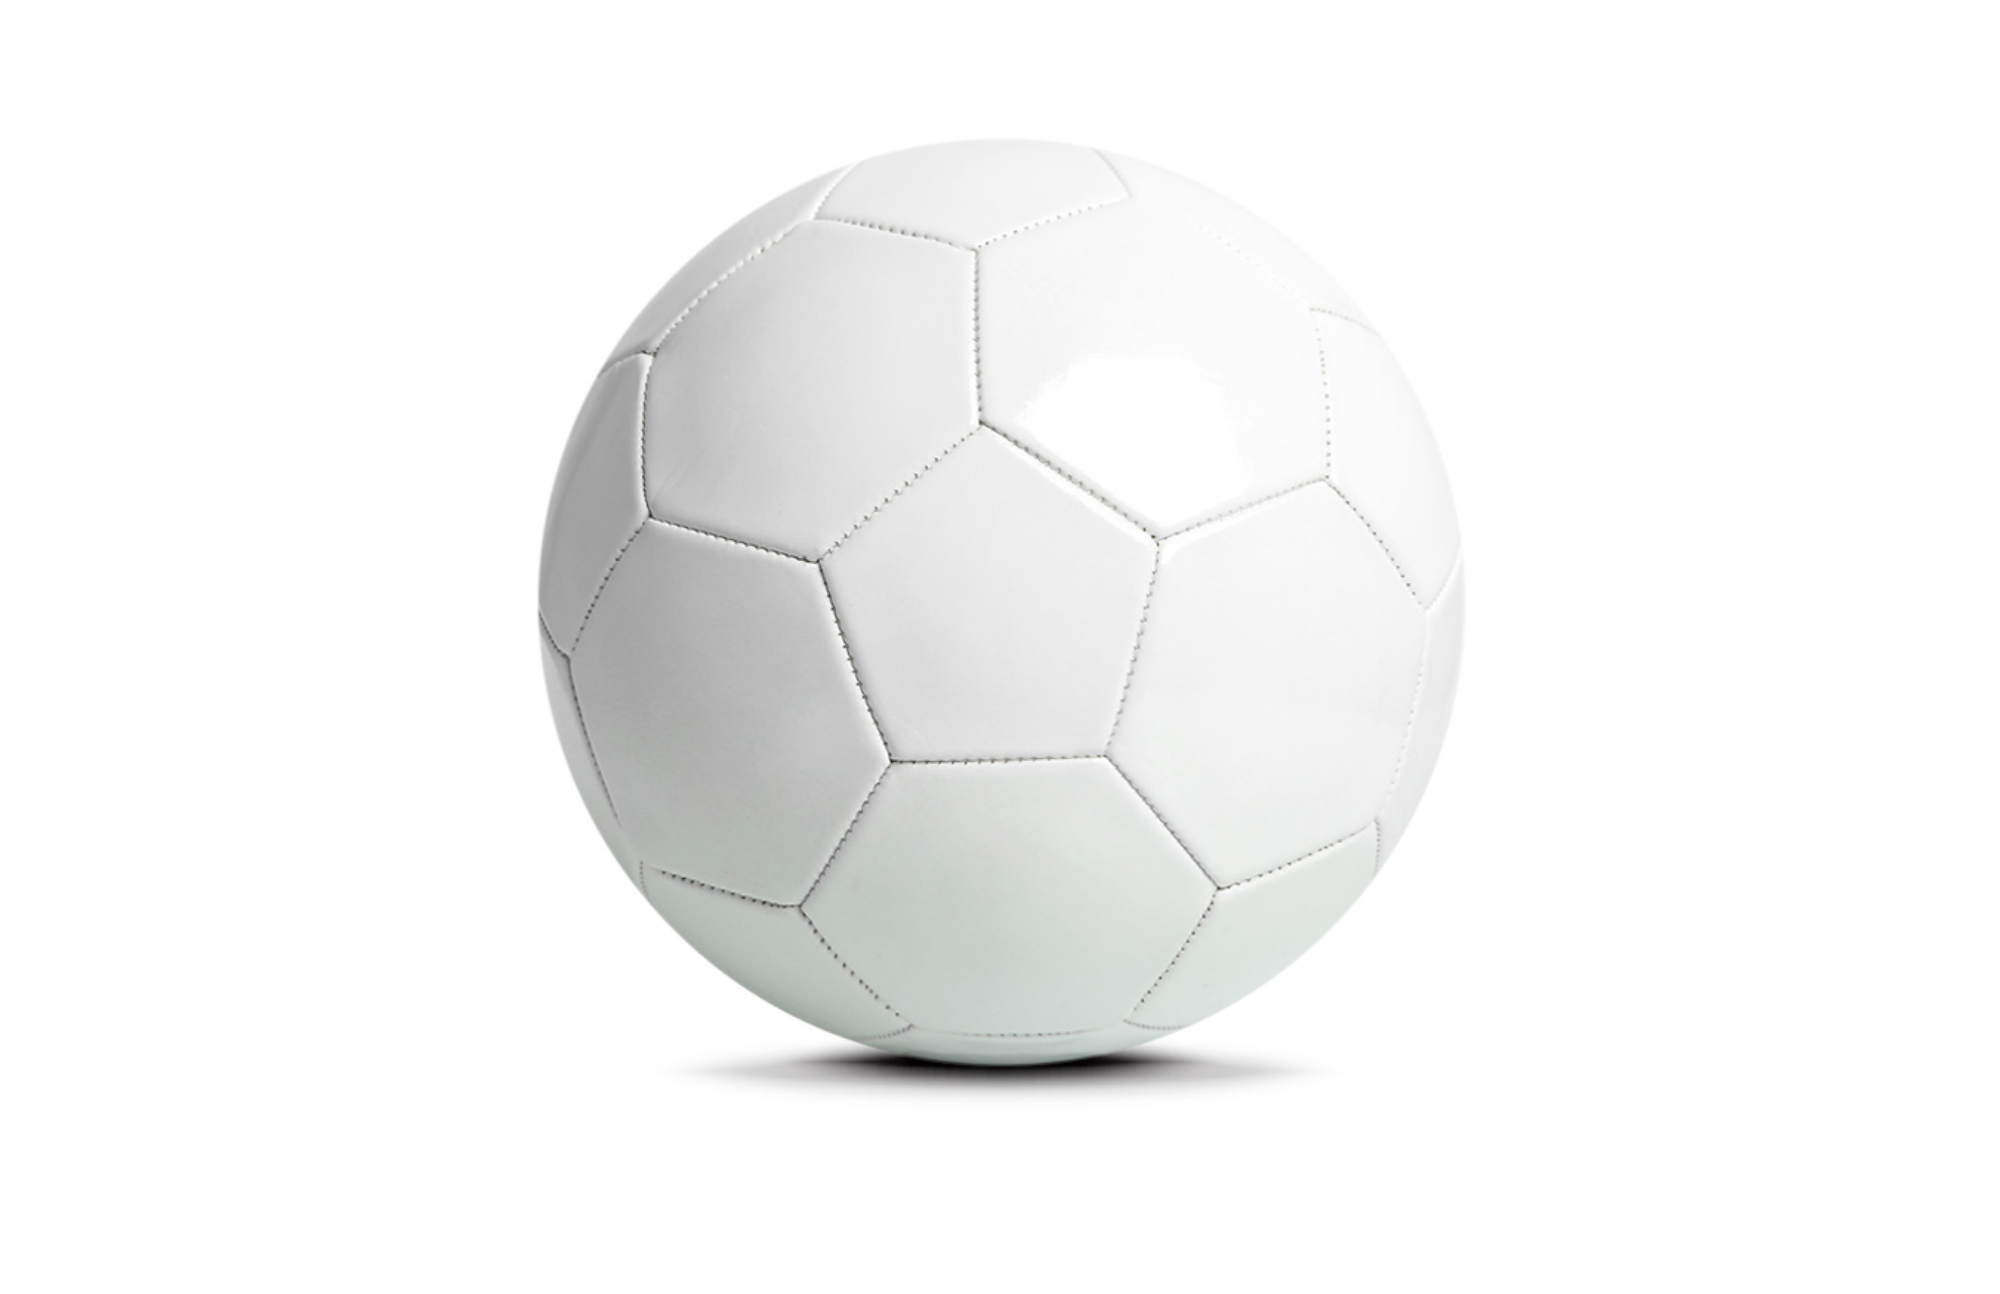 Plain white soccer ball